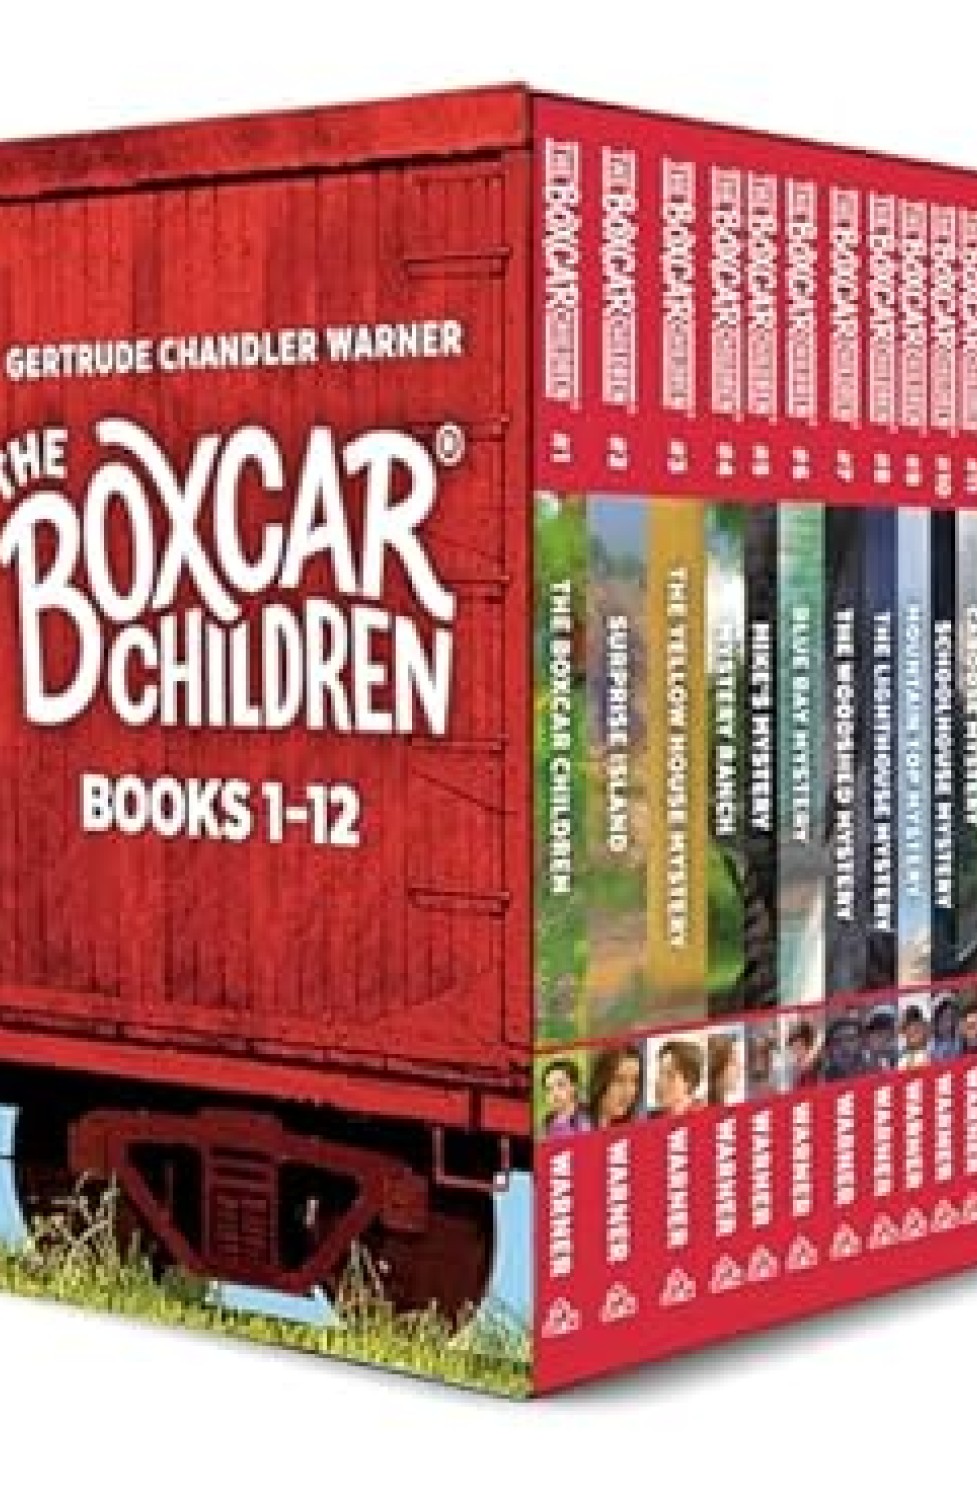 THE BOXCAR CHILDREN : BOOKS 1-12